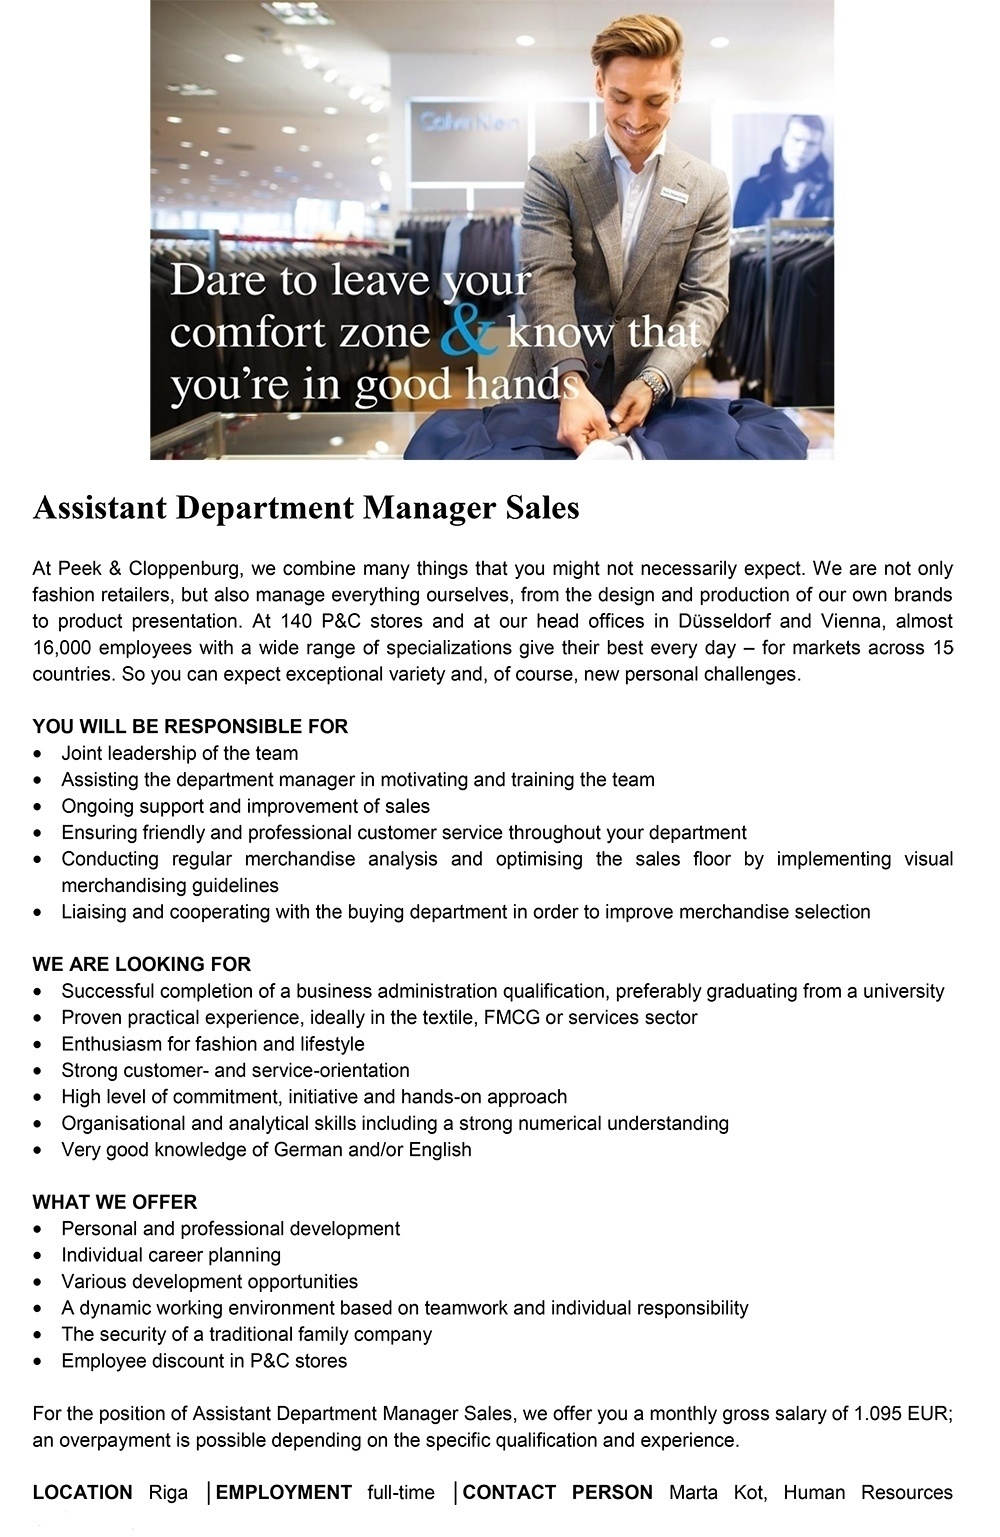 Peek & Cloppenburg Assistant Department Manager Sales